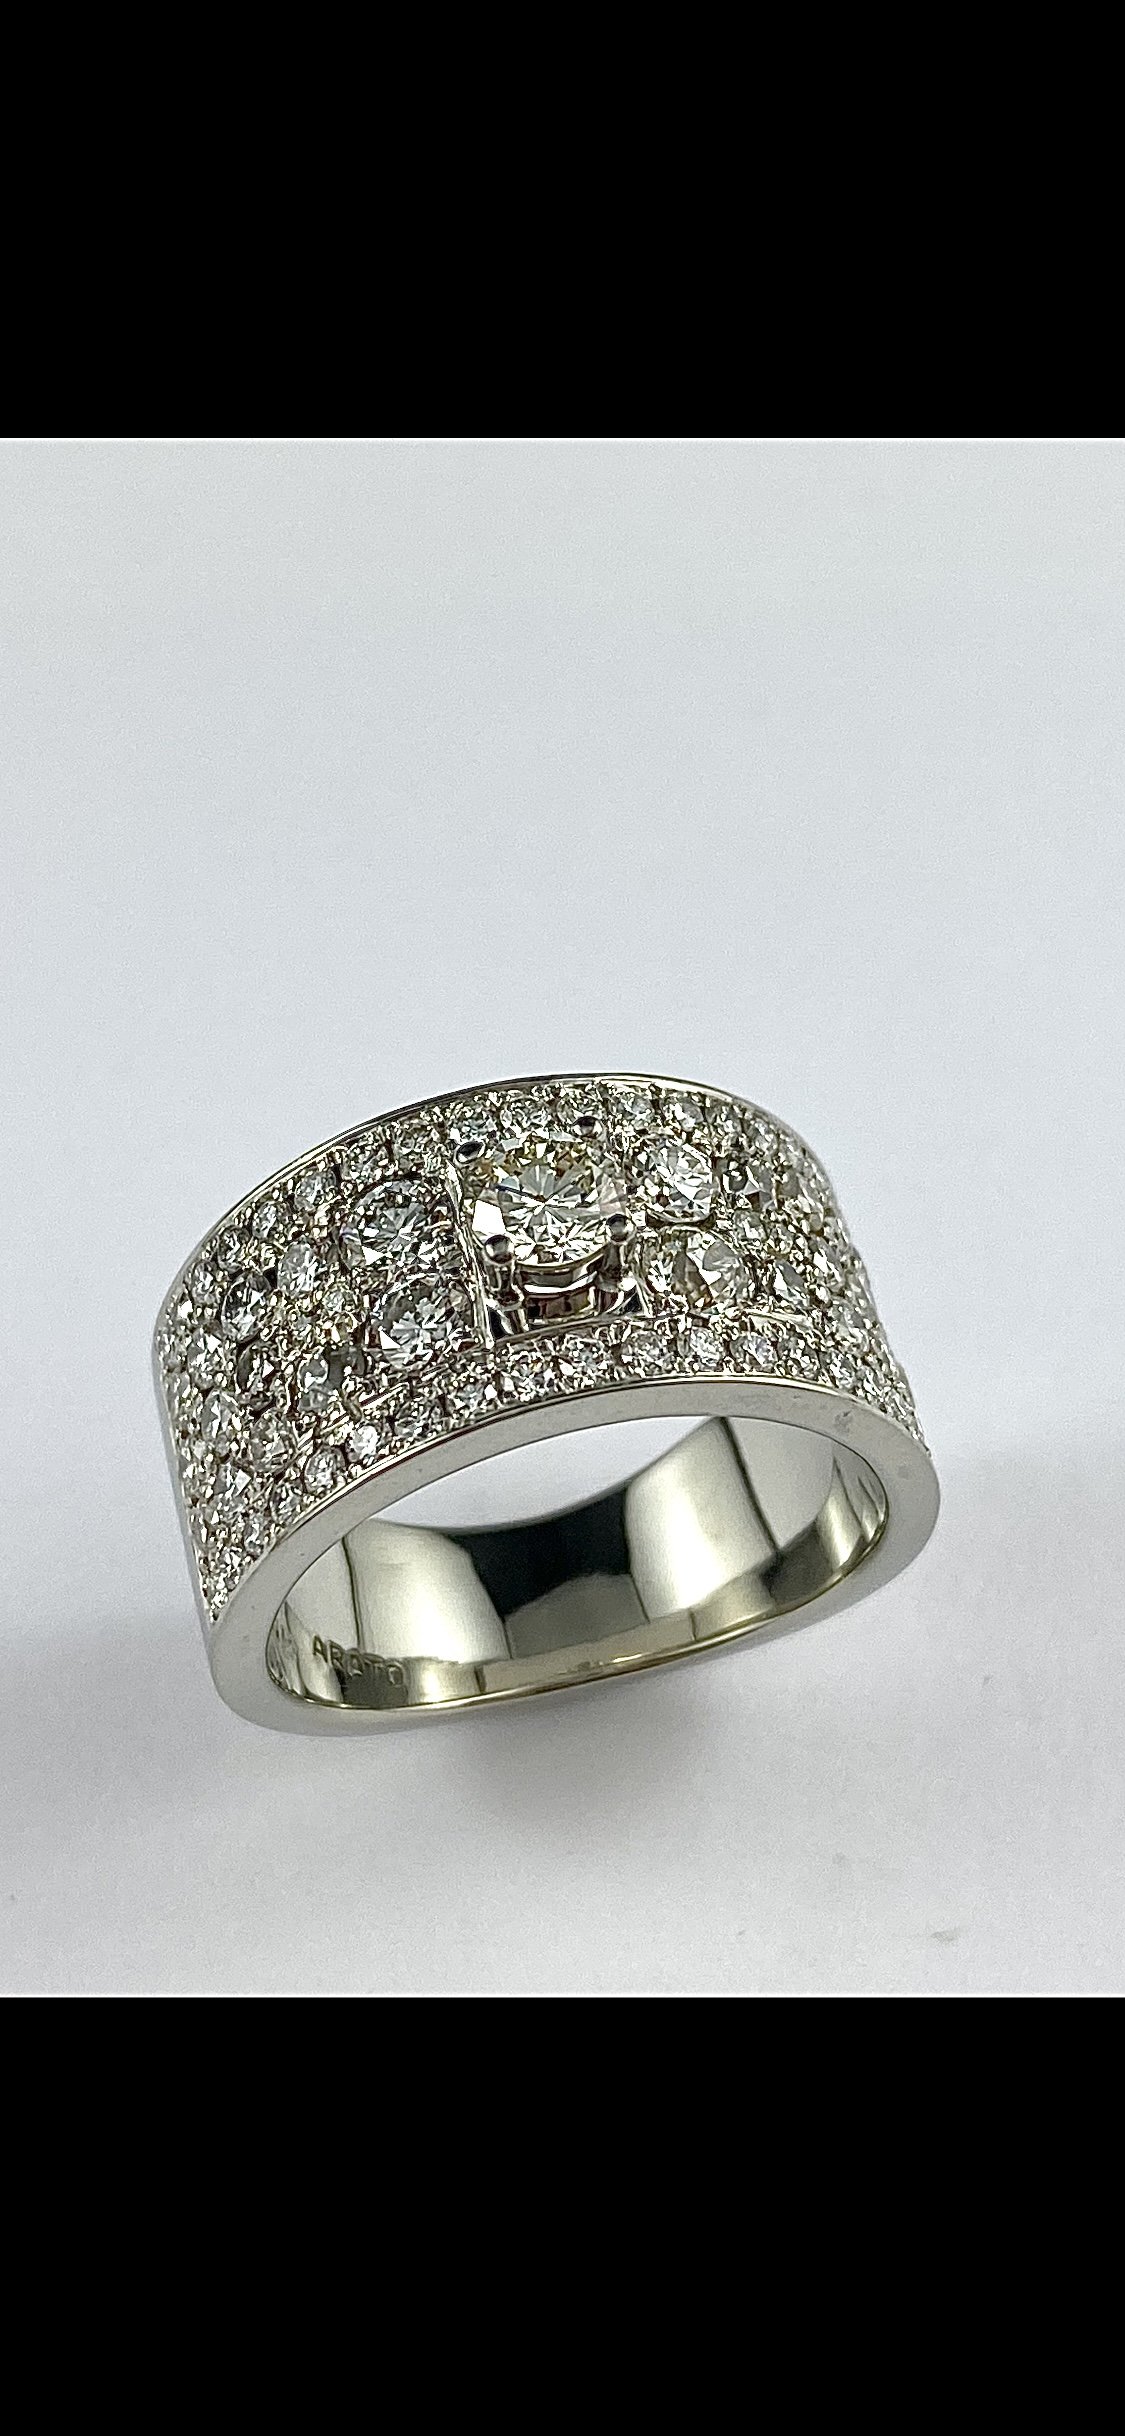 19K White Gold Diamond Pave Ring